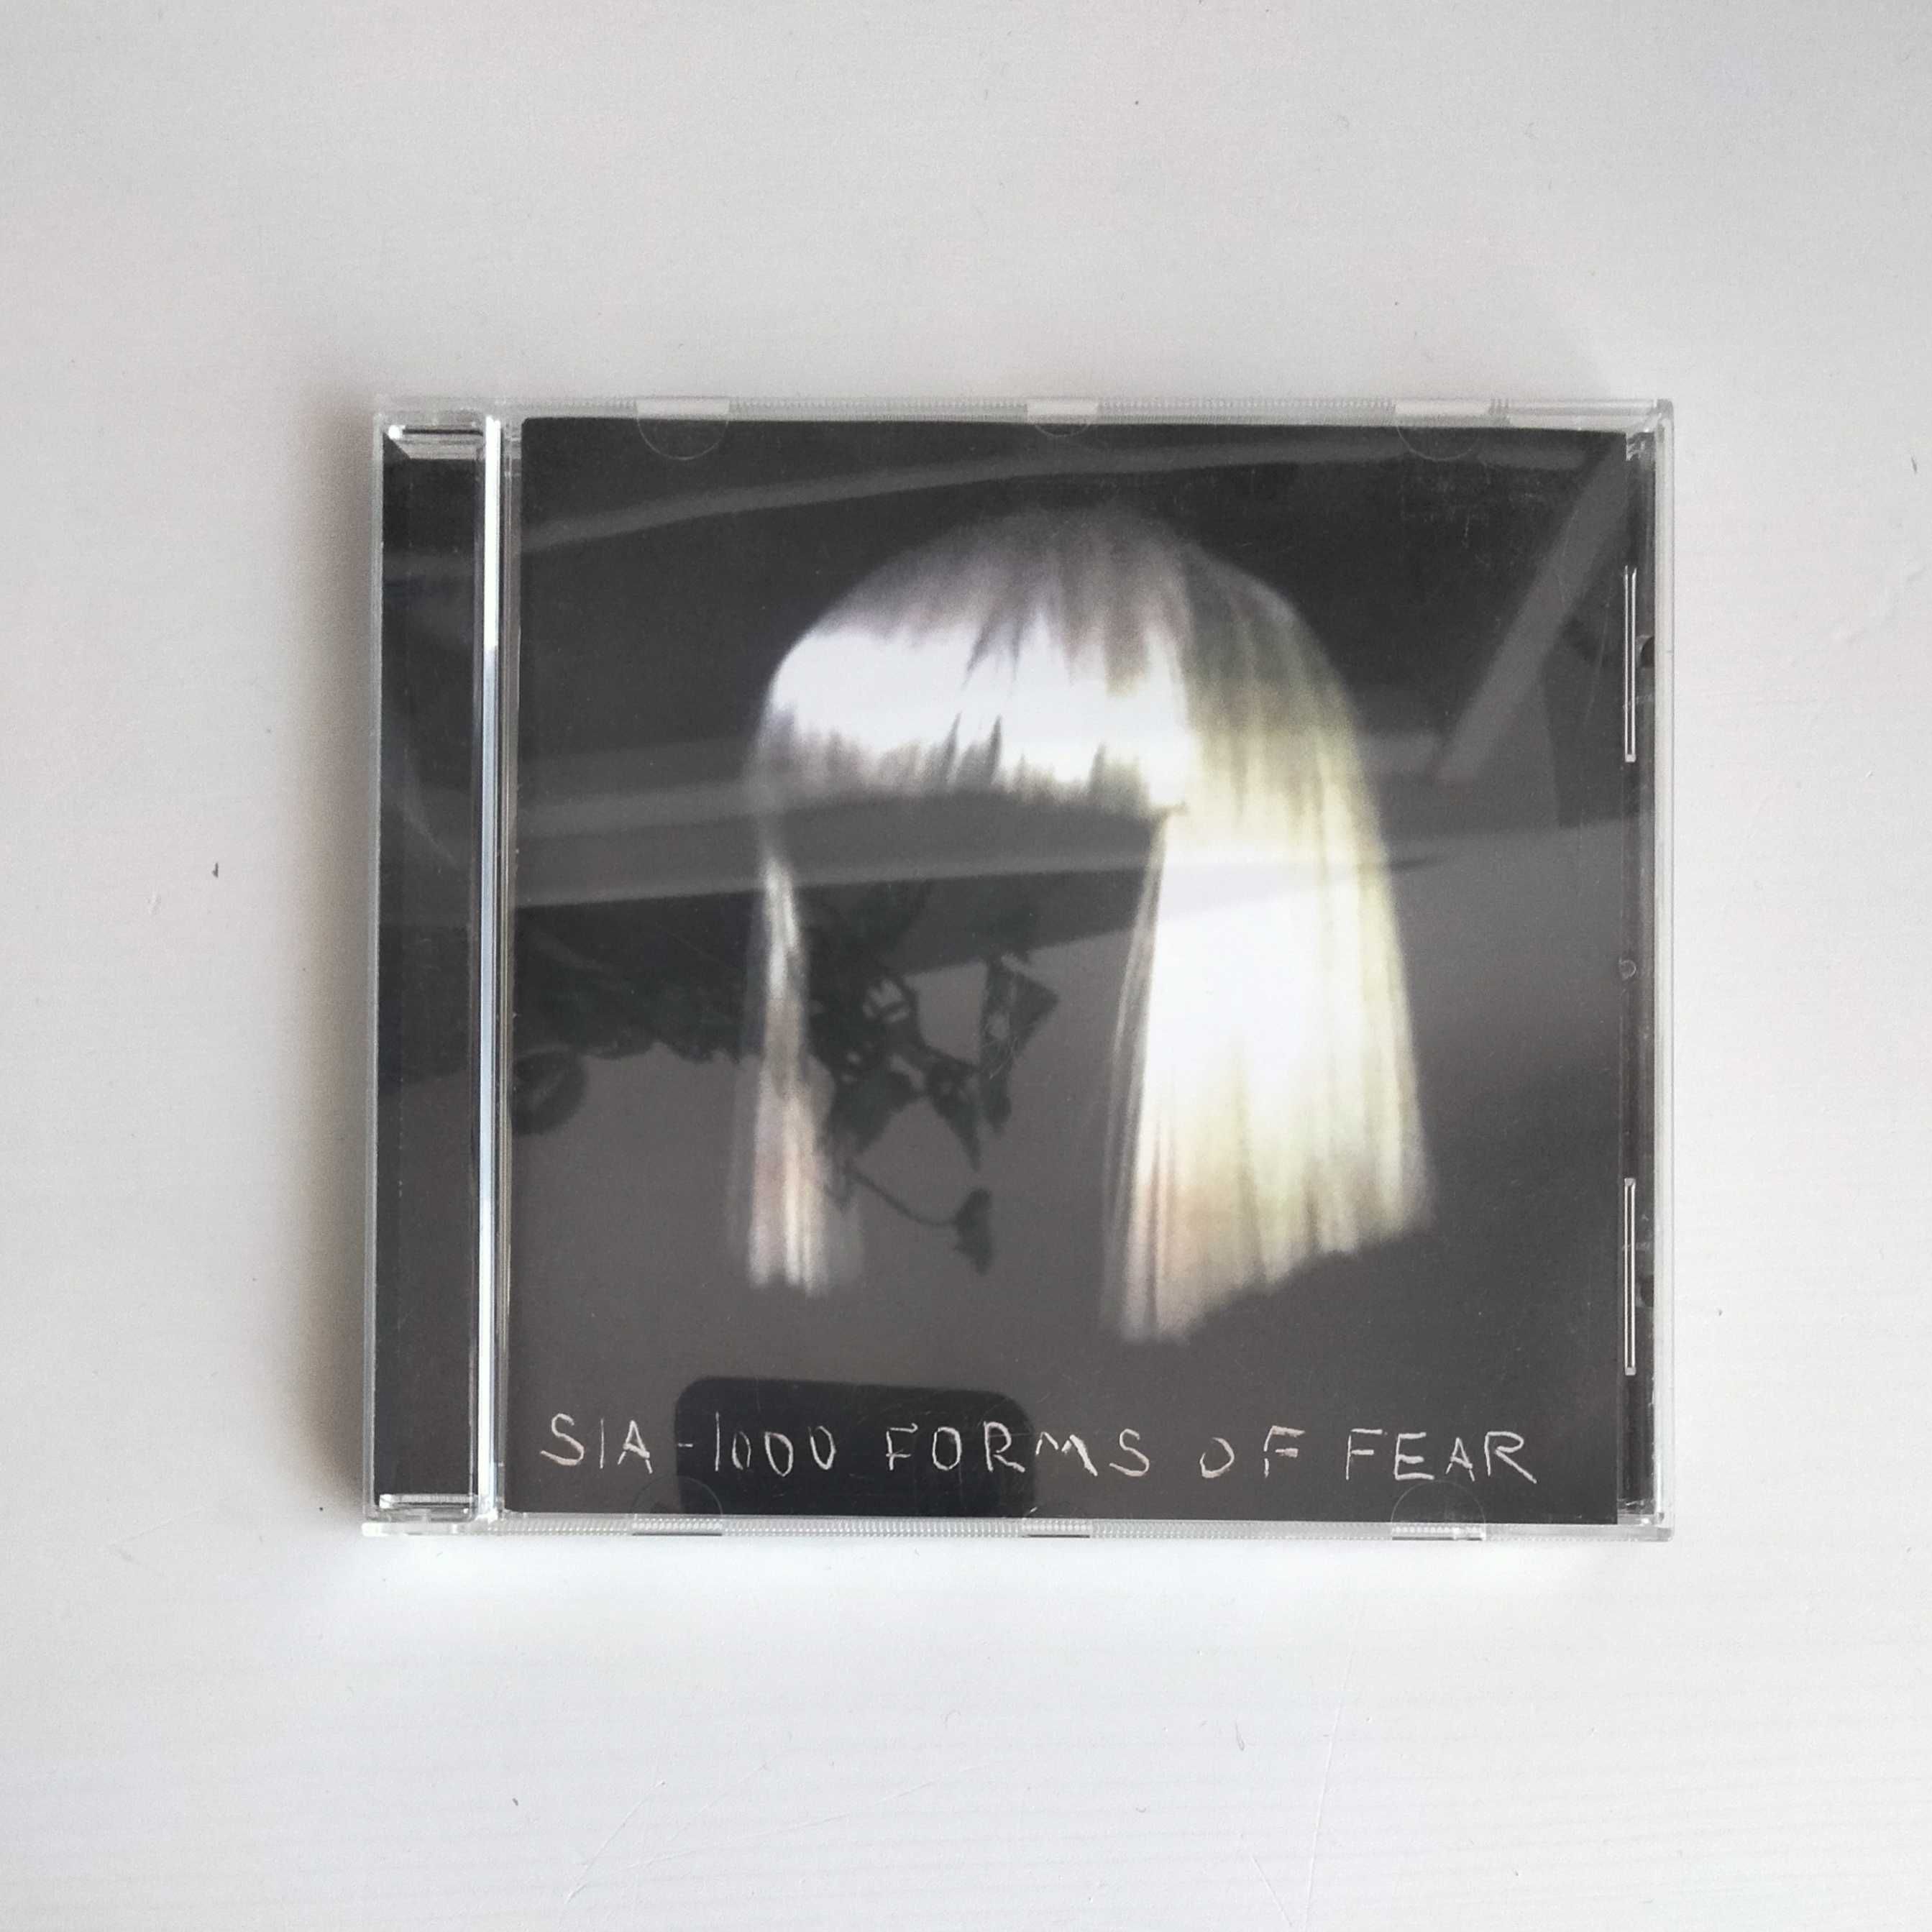 SIA 1000 forms of fear, płyta CD